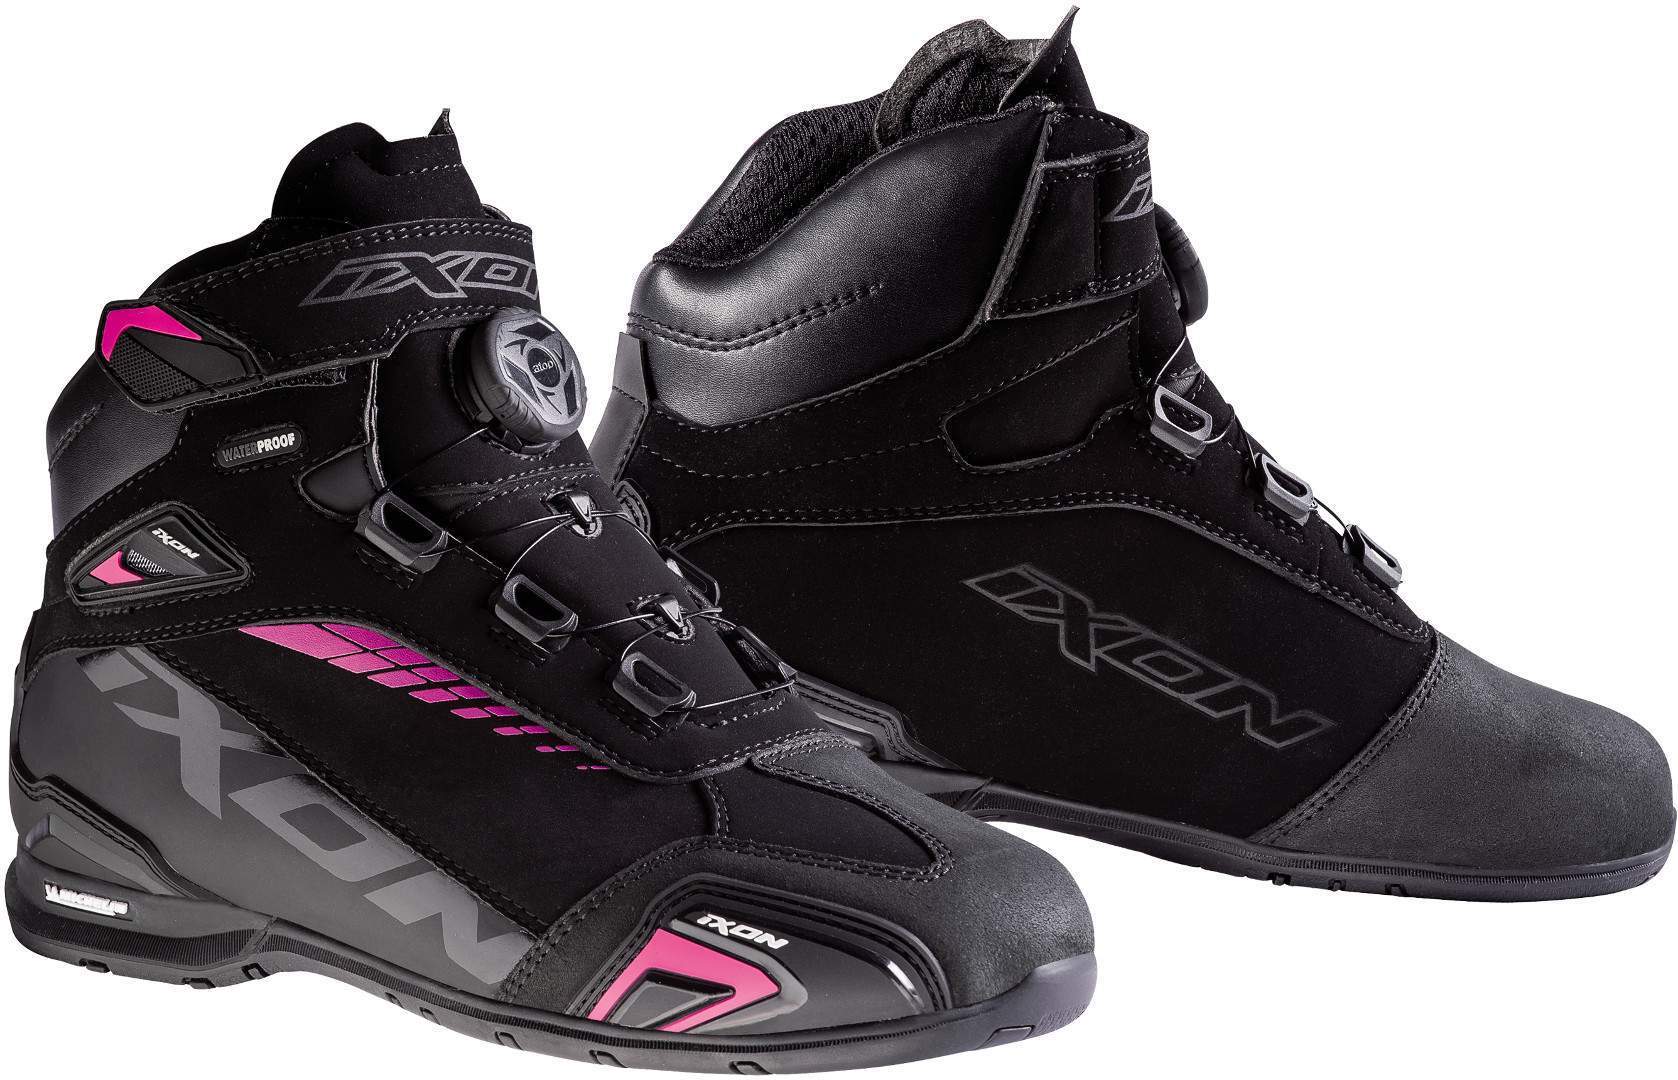 Обувь Ixon Bull WP L для женщин для мотоцикла, черно-розовая